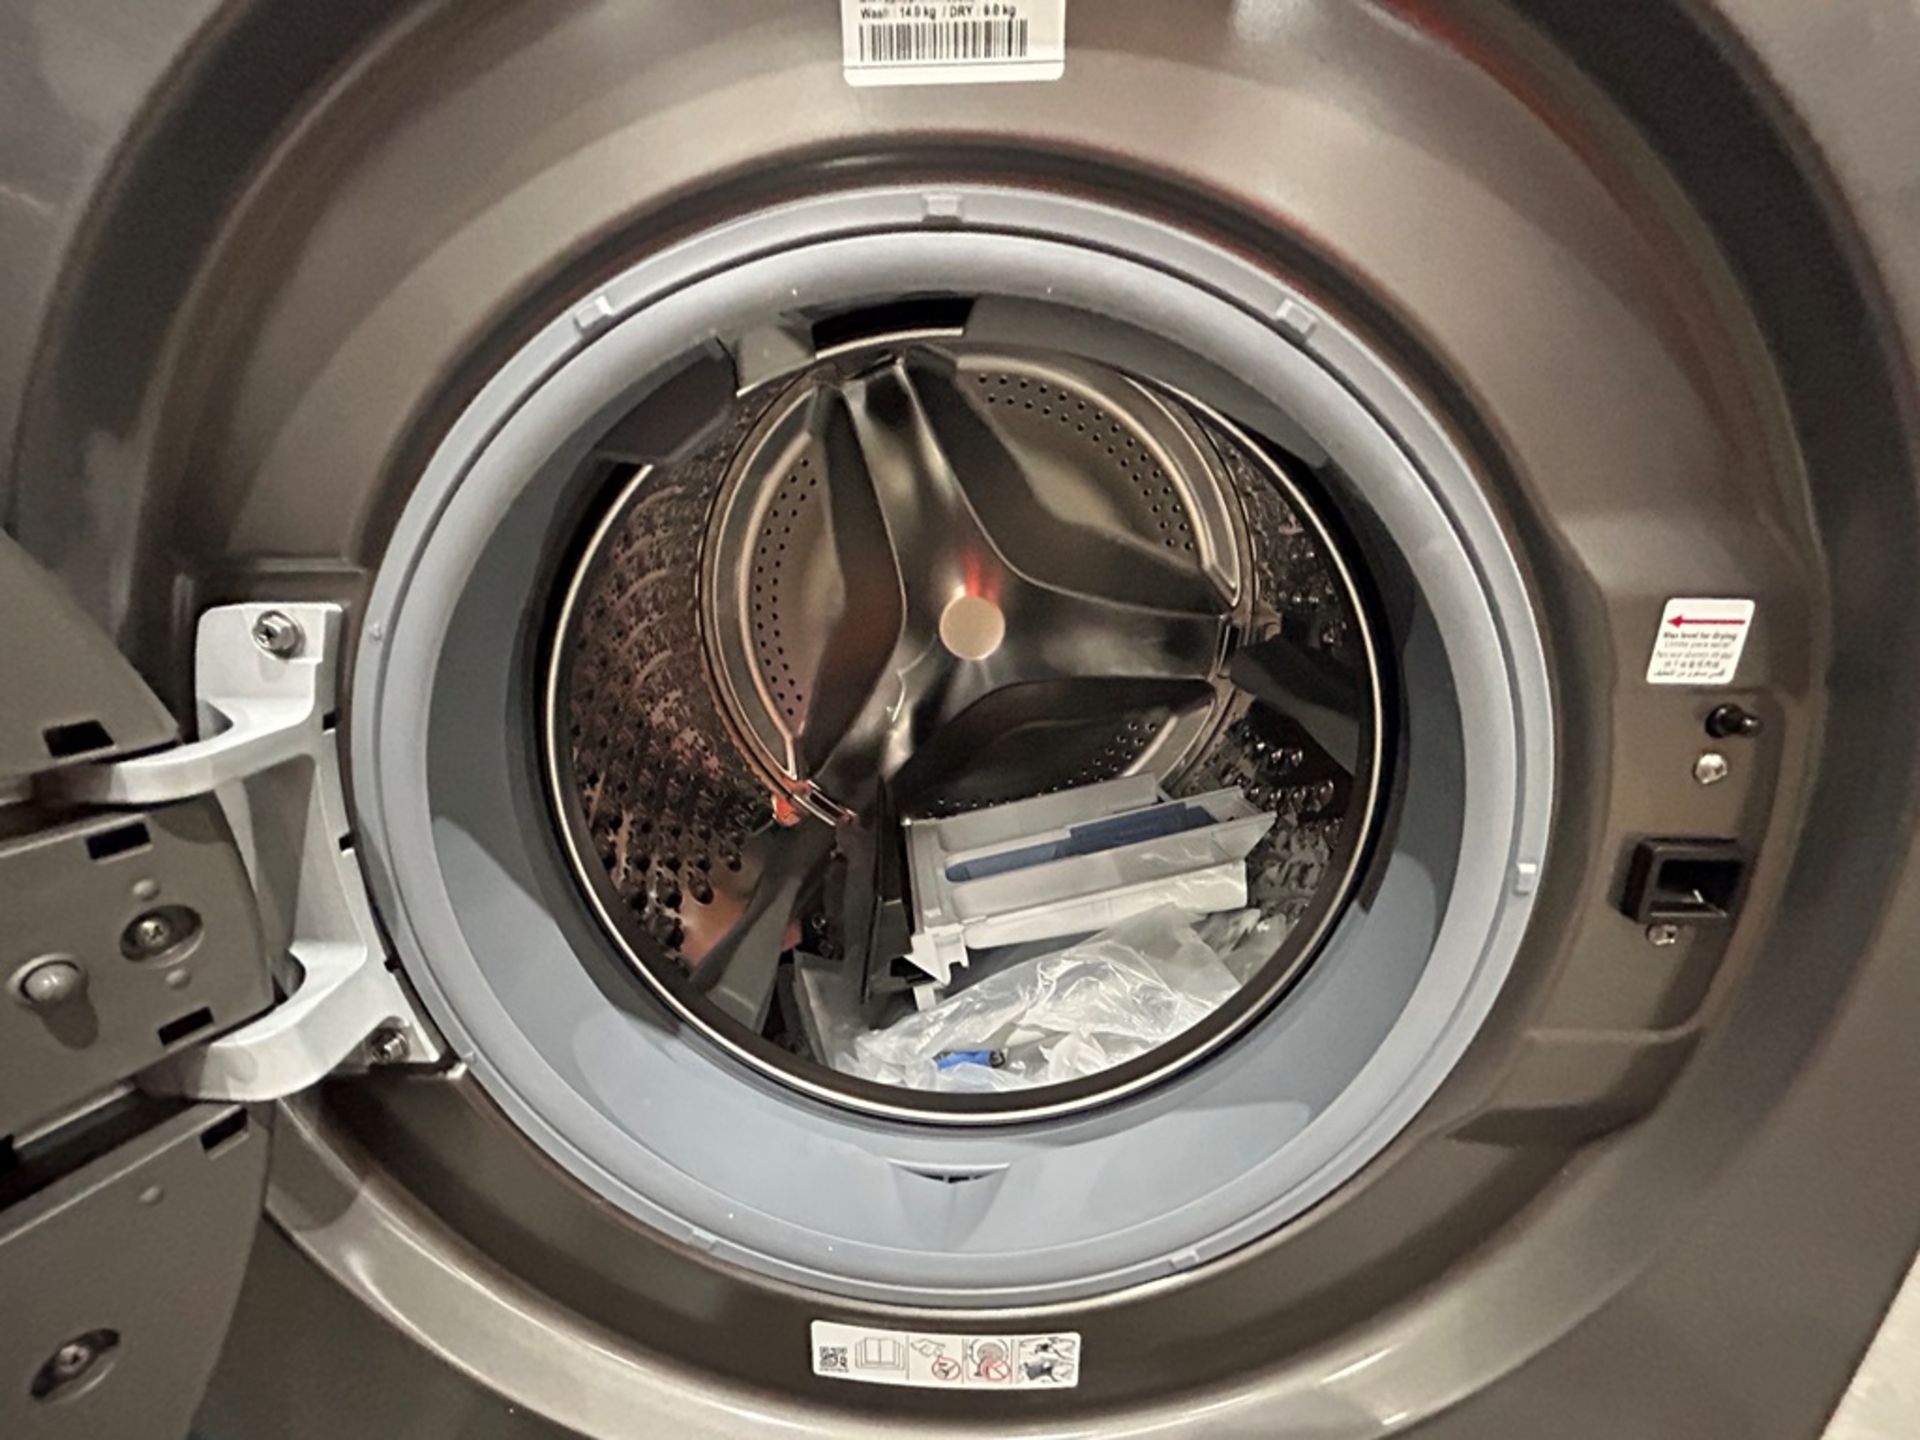 Lote de 2 lavadoras contiene: 1 Lavadora de 24 KG Marca MABE, Modelo LMA742115WDAB10, Serie S15124, - Image 5 of 10